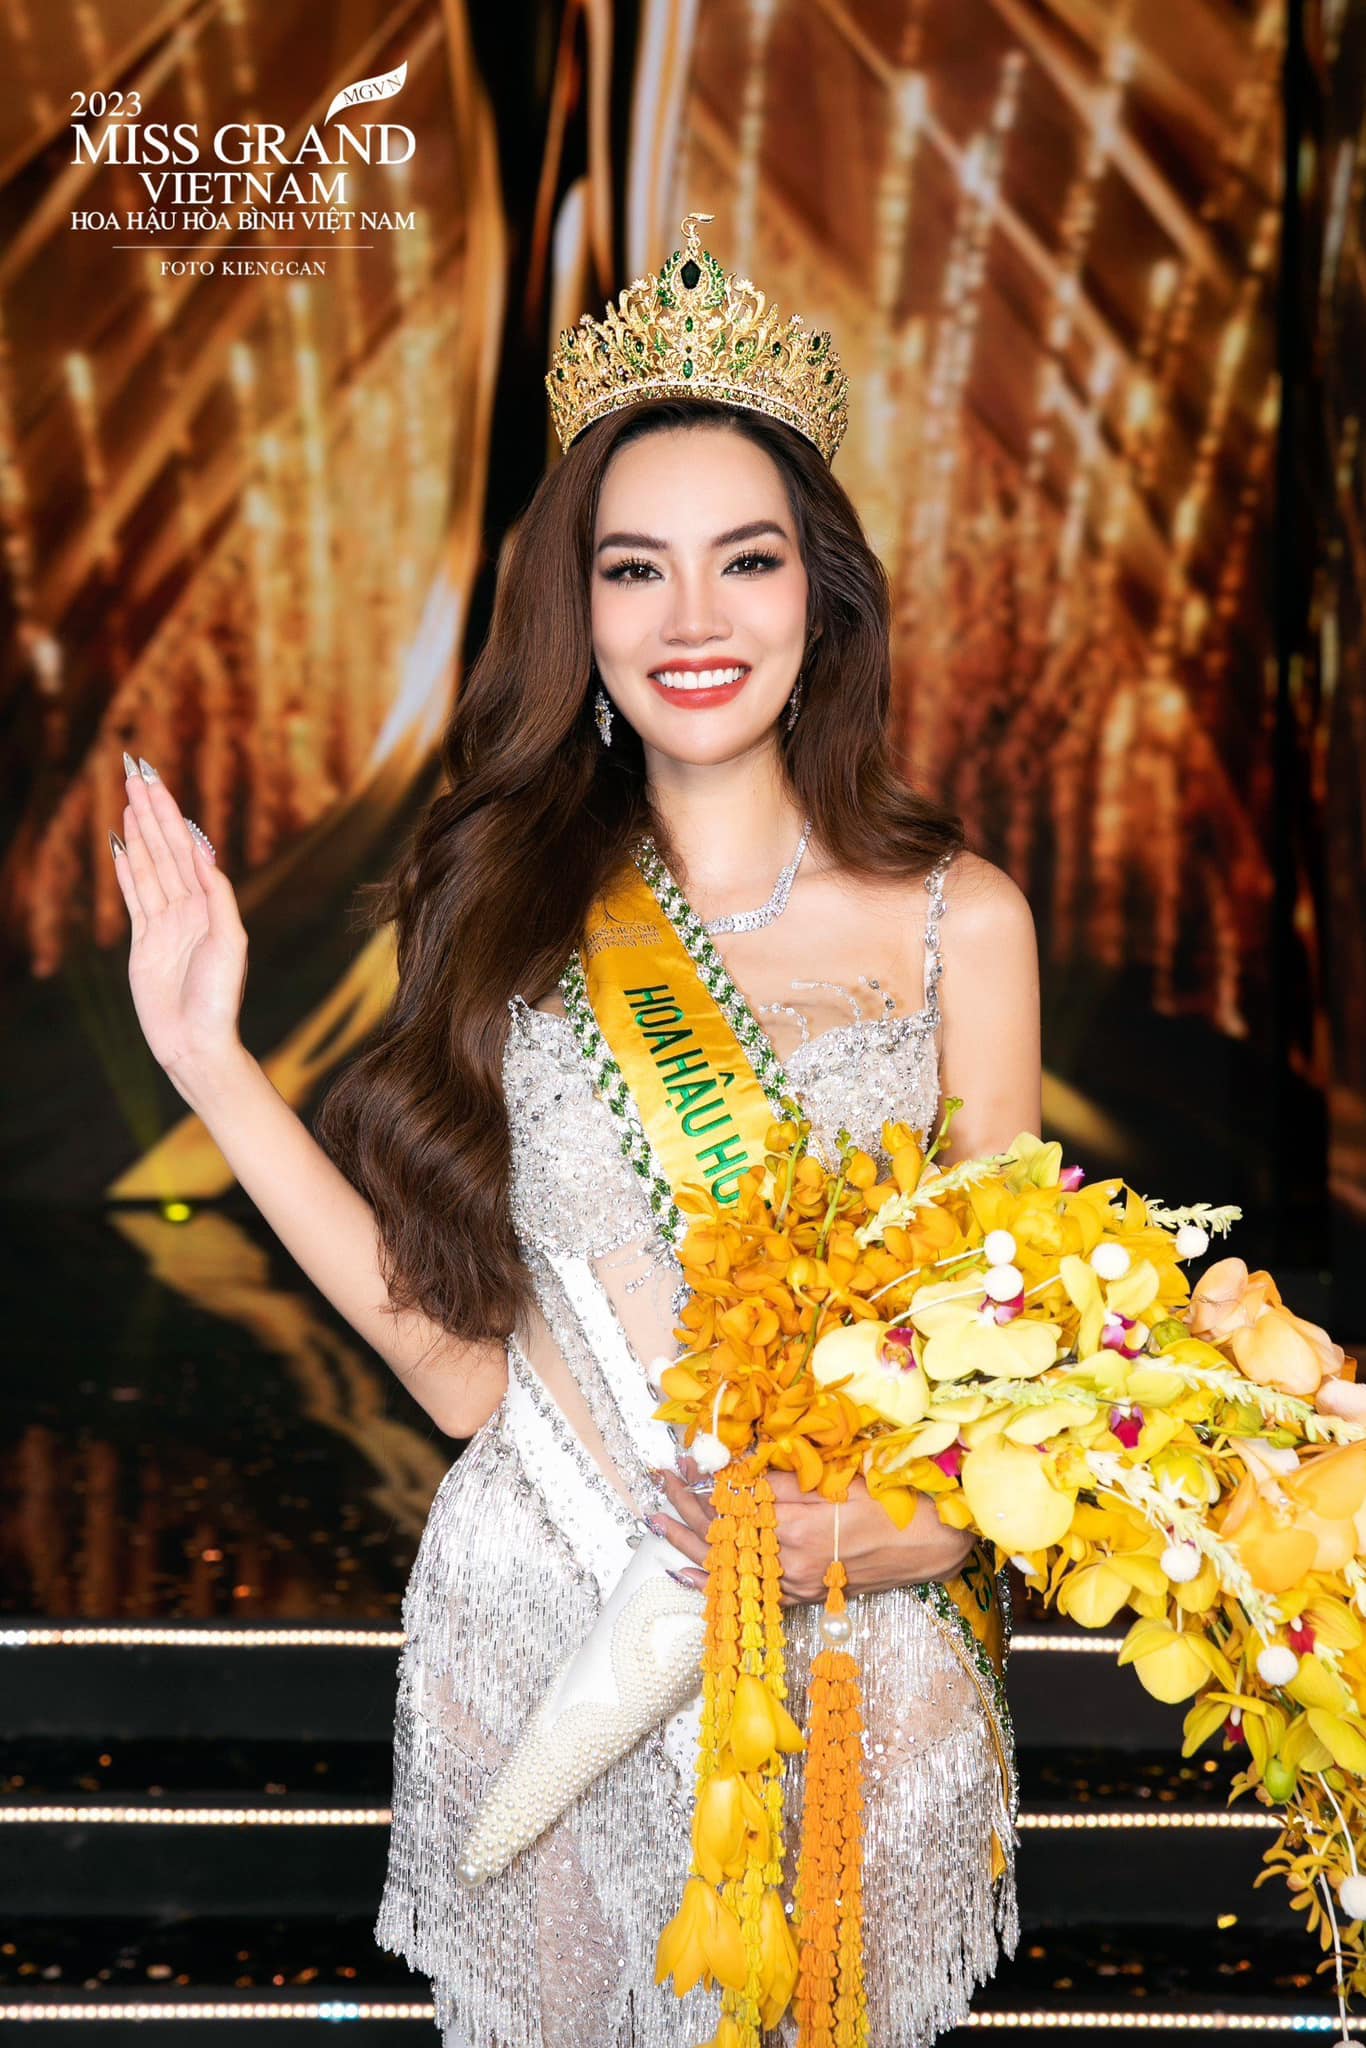 Lê Hoàng Phương tỏa sáng trong Miss Grand Vietnam 2023 (Ảnh: MGVN)